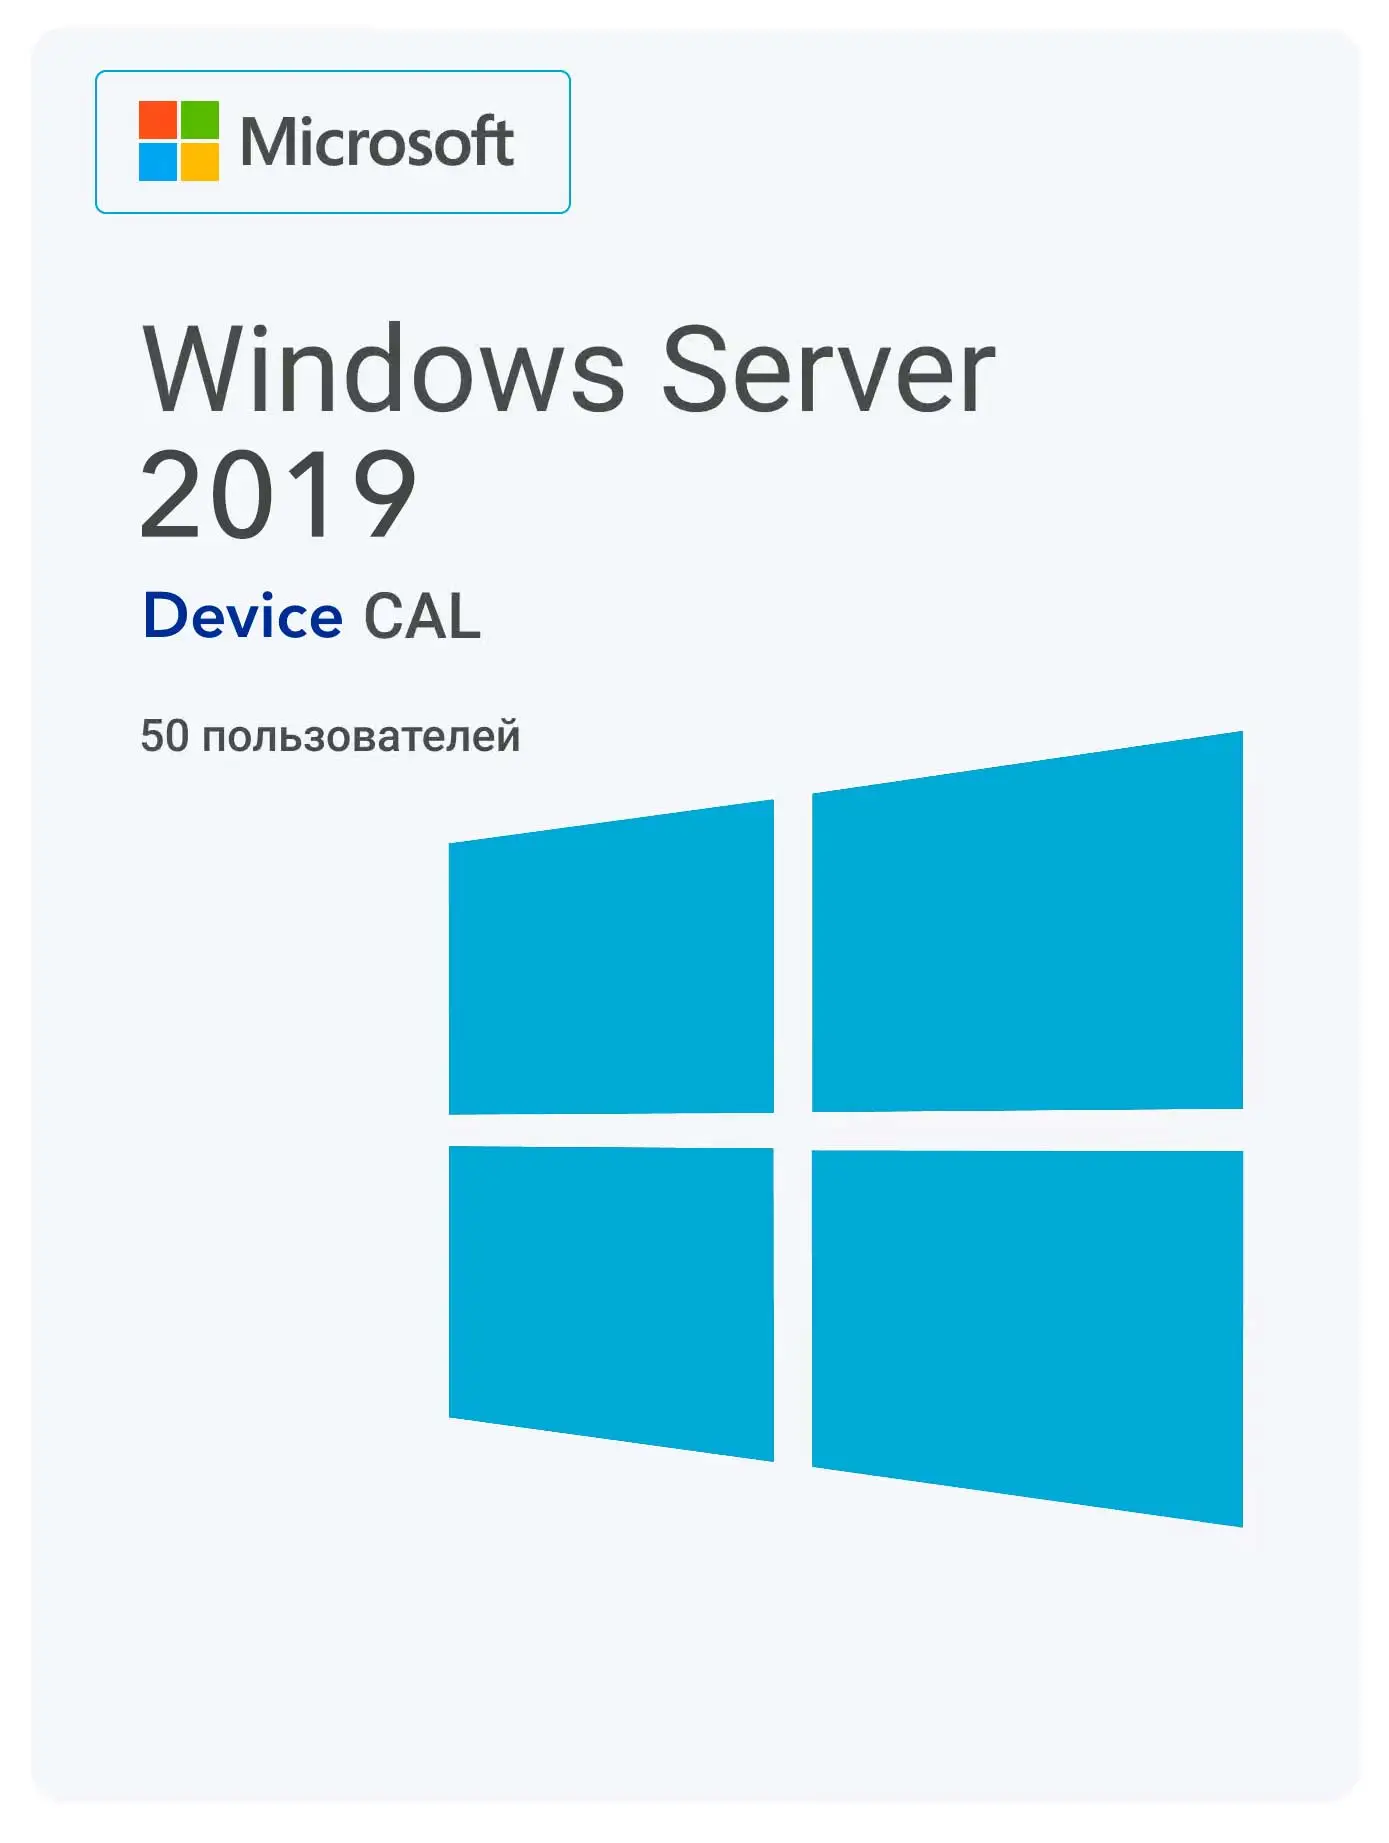 Windows Server 2019 RDS Device CAL (50 пользователей)